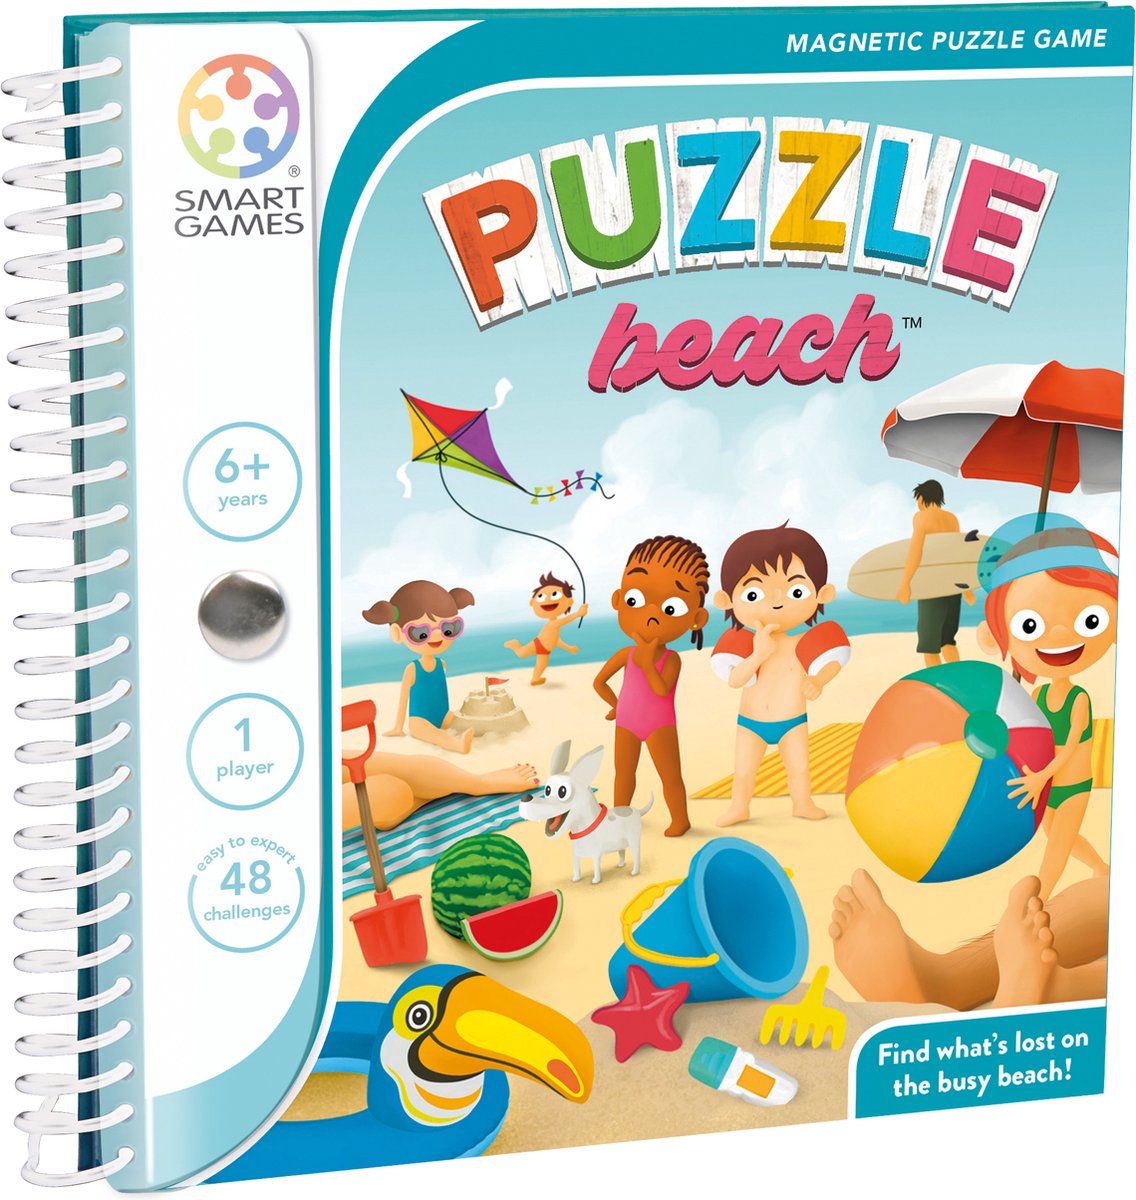 SmartGames - Puzzle Beach - Magnetische breinbreker - 48 uitdagingen - reisspel voor 1 speler - SmartGames